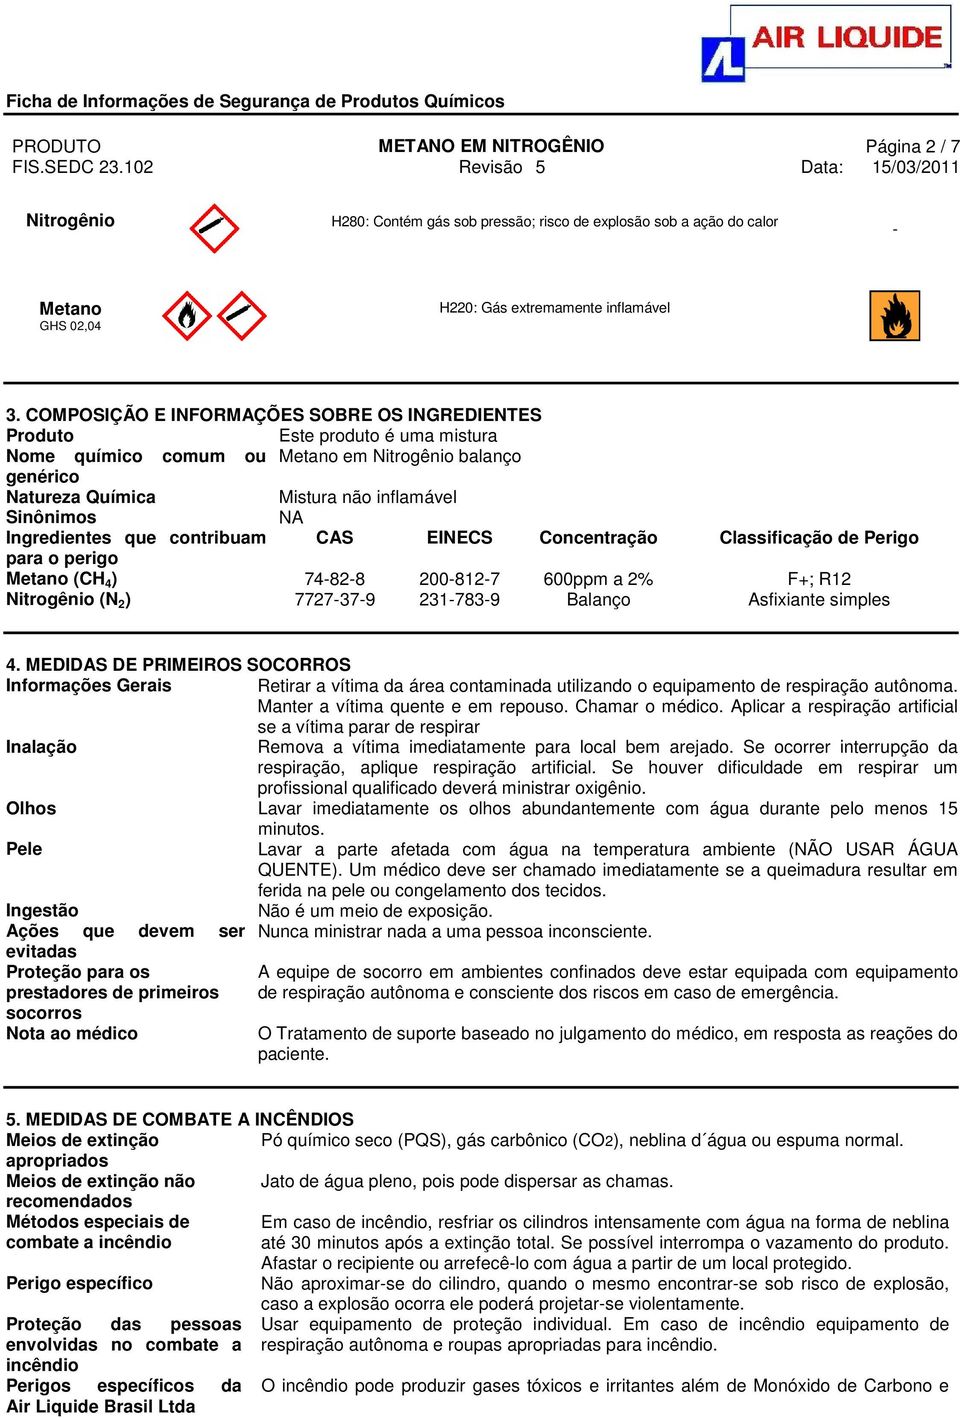 Ingredientes que contribuam CAS EINECS Concentração Classificação de Perigo para o perigo Metano (CH 4 ) 74-82-8 200-812-7 600ppm a 2% F+; R12 Nitrogênio (N 2 ) 7727-37-9 231-783-9 Balanço Asfixiante